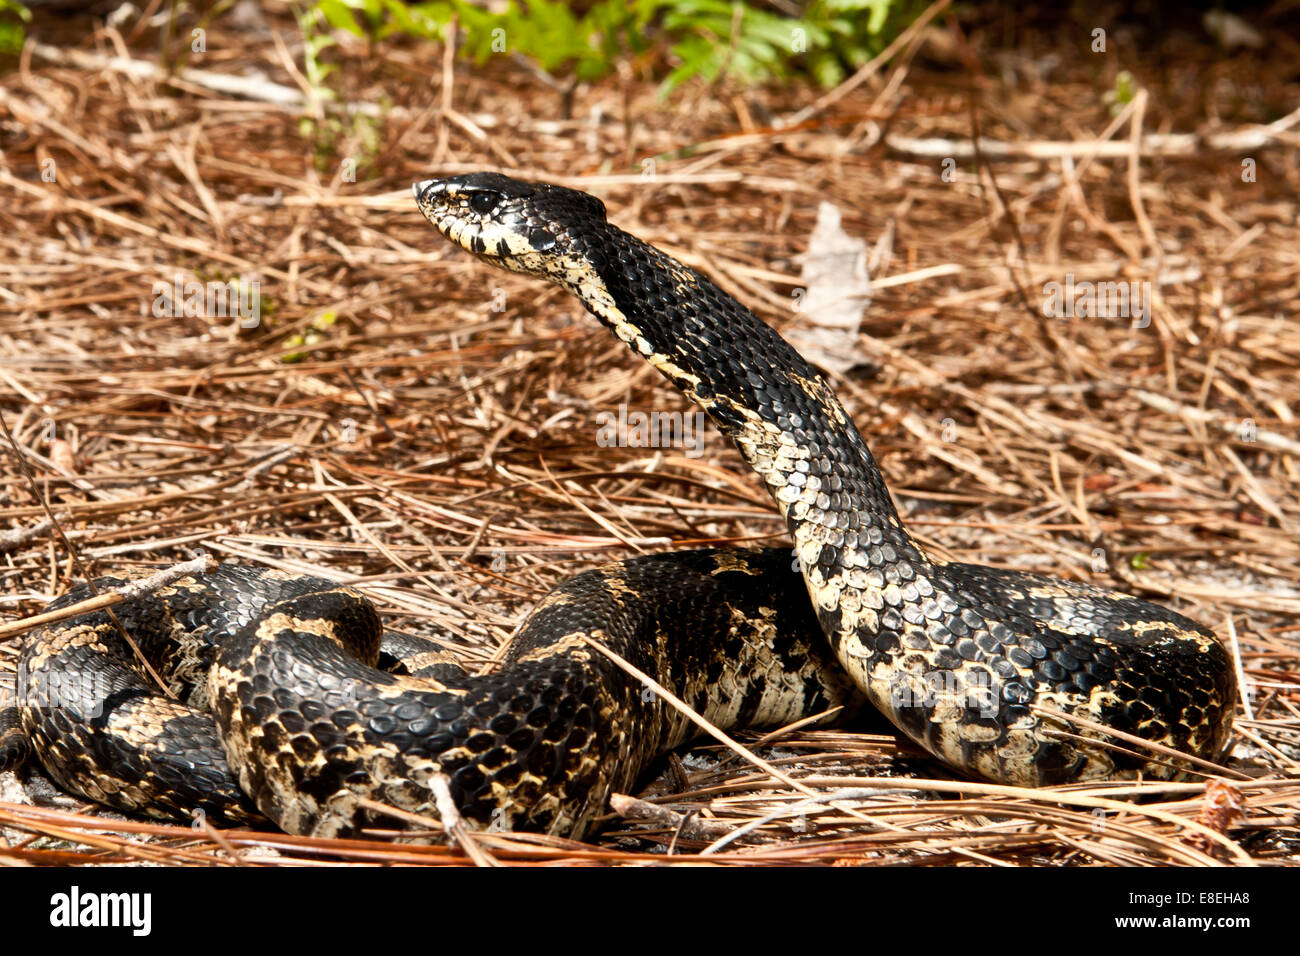 Eastern Hognose Snake Banque De Photographies Et D Images A Haute Resolution Alamy